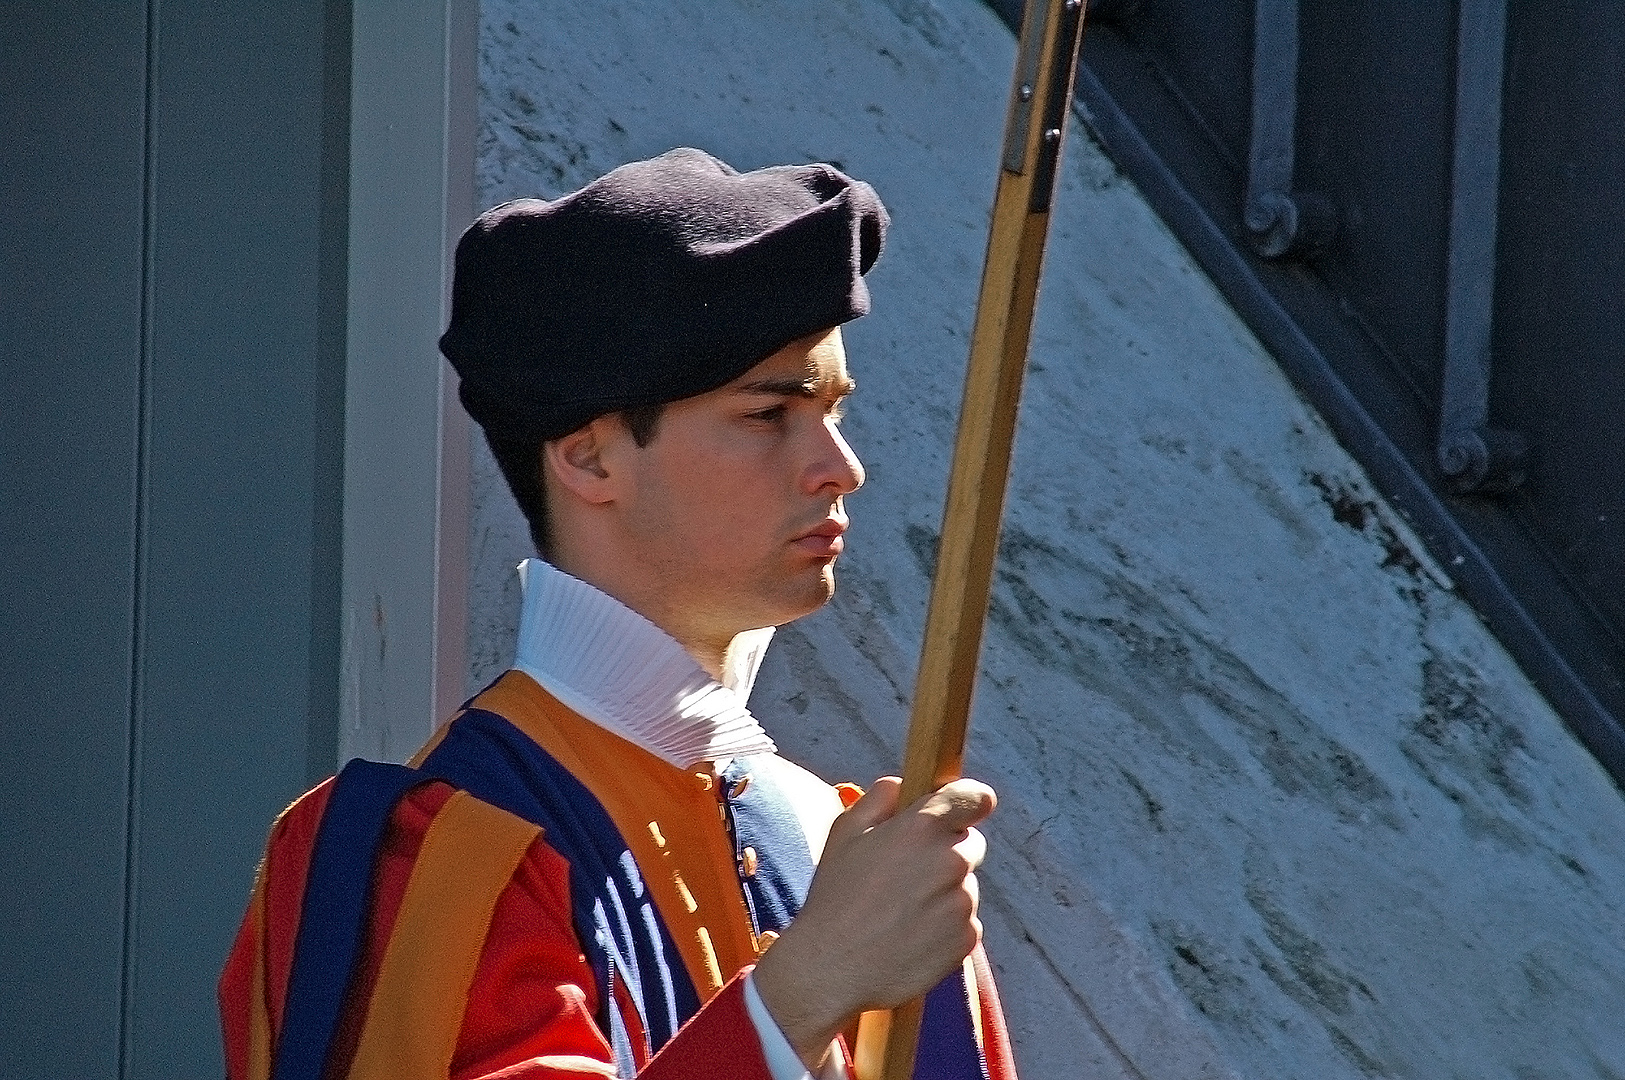 Zwitserse gardist in Vaticaanstad, Rome, Swiss guard in the Vatican, Rome